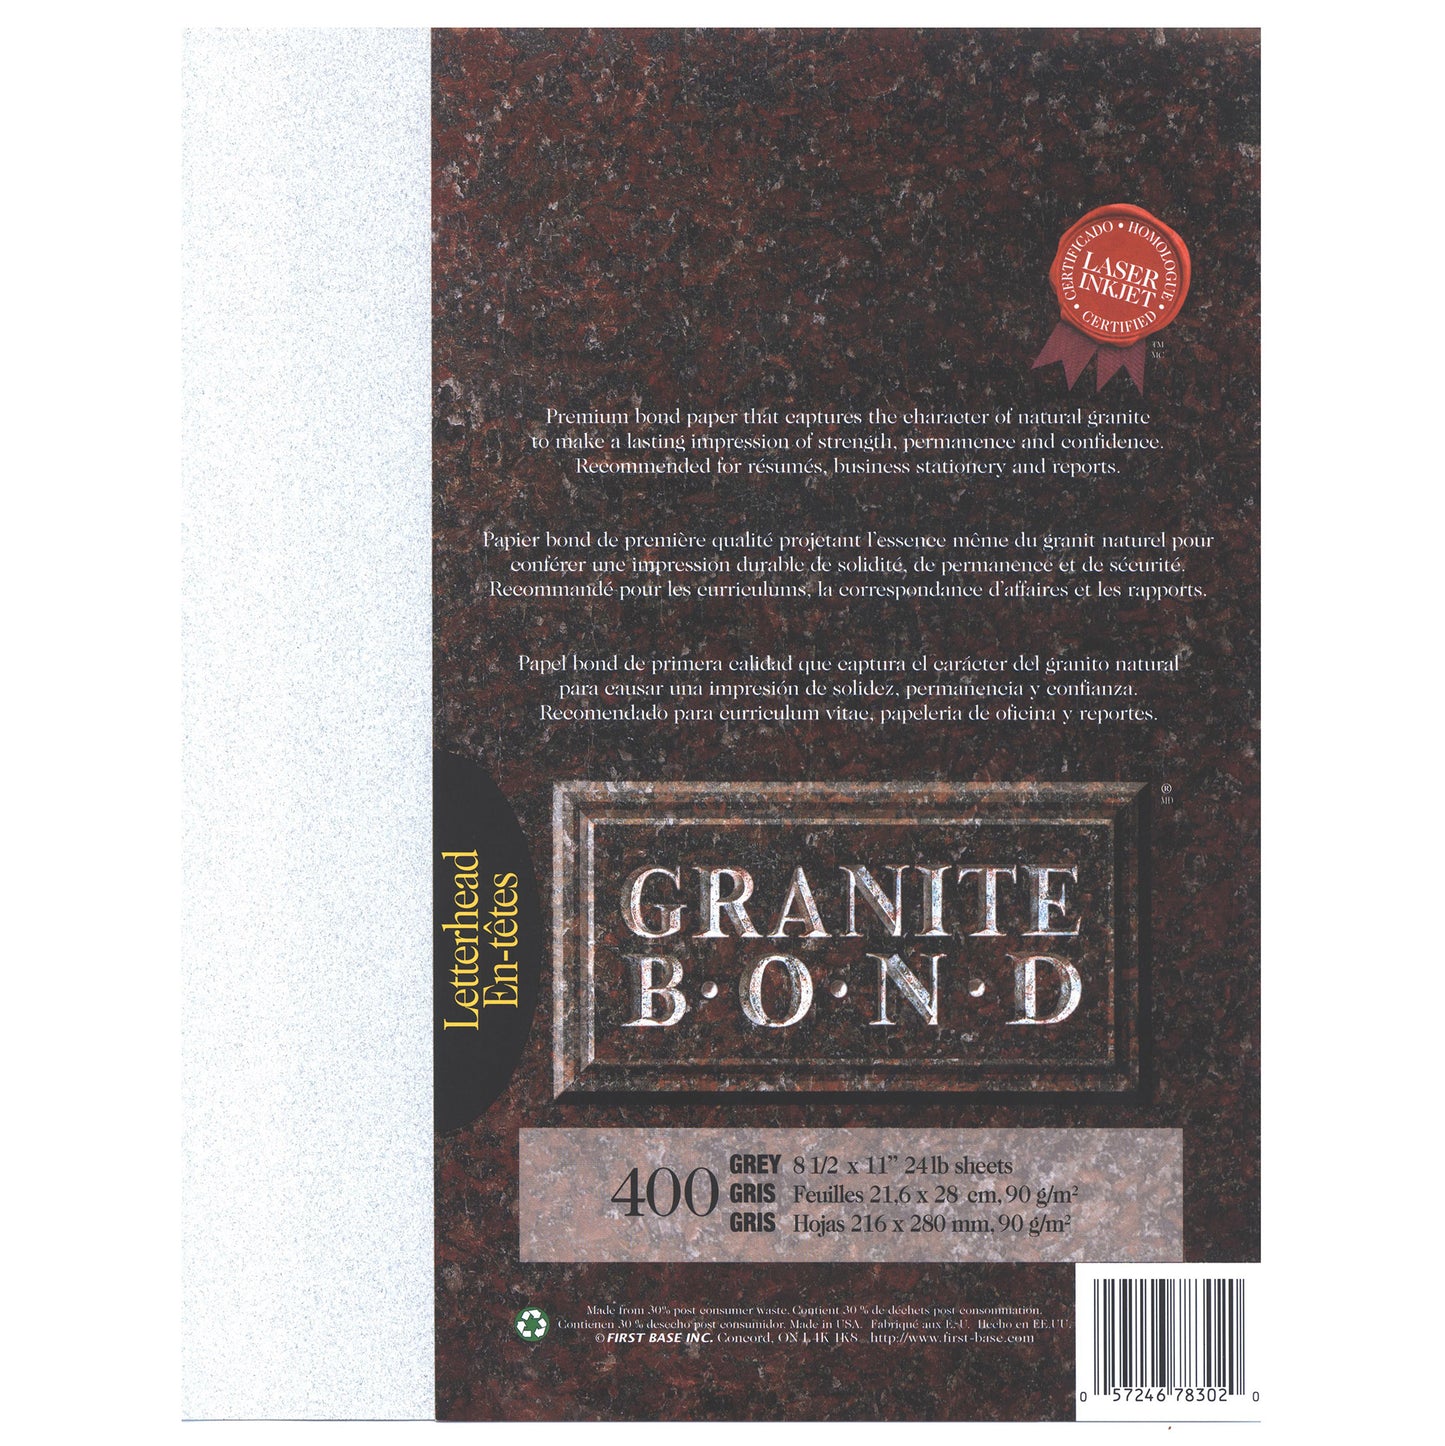 St. James® Granite Bond, 24 lb Letter-Size Paper, Grey, Pack of 400